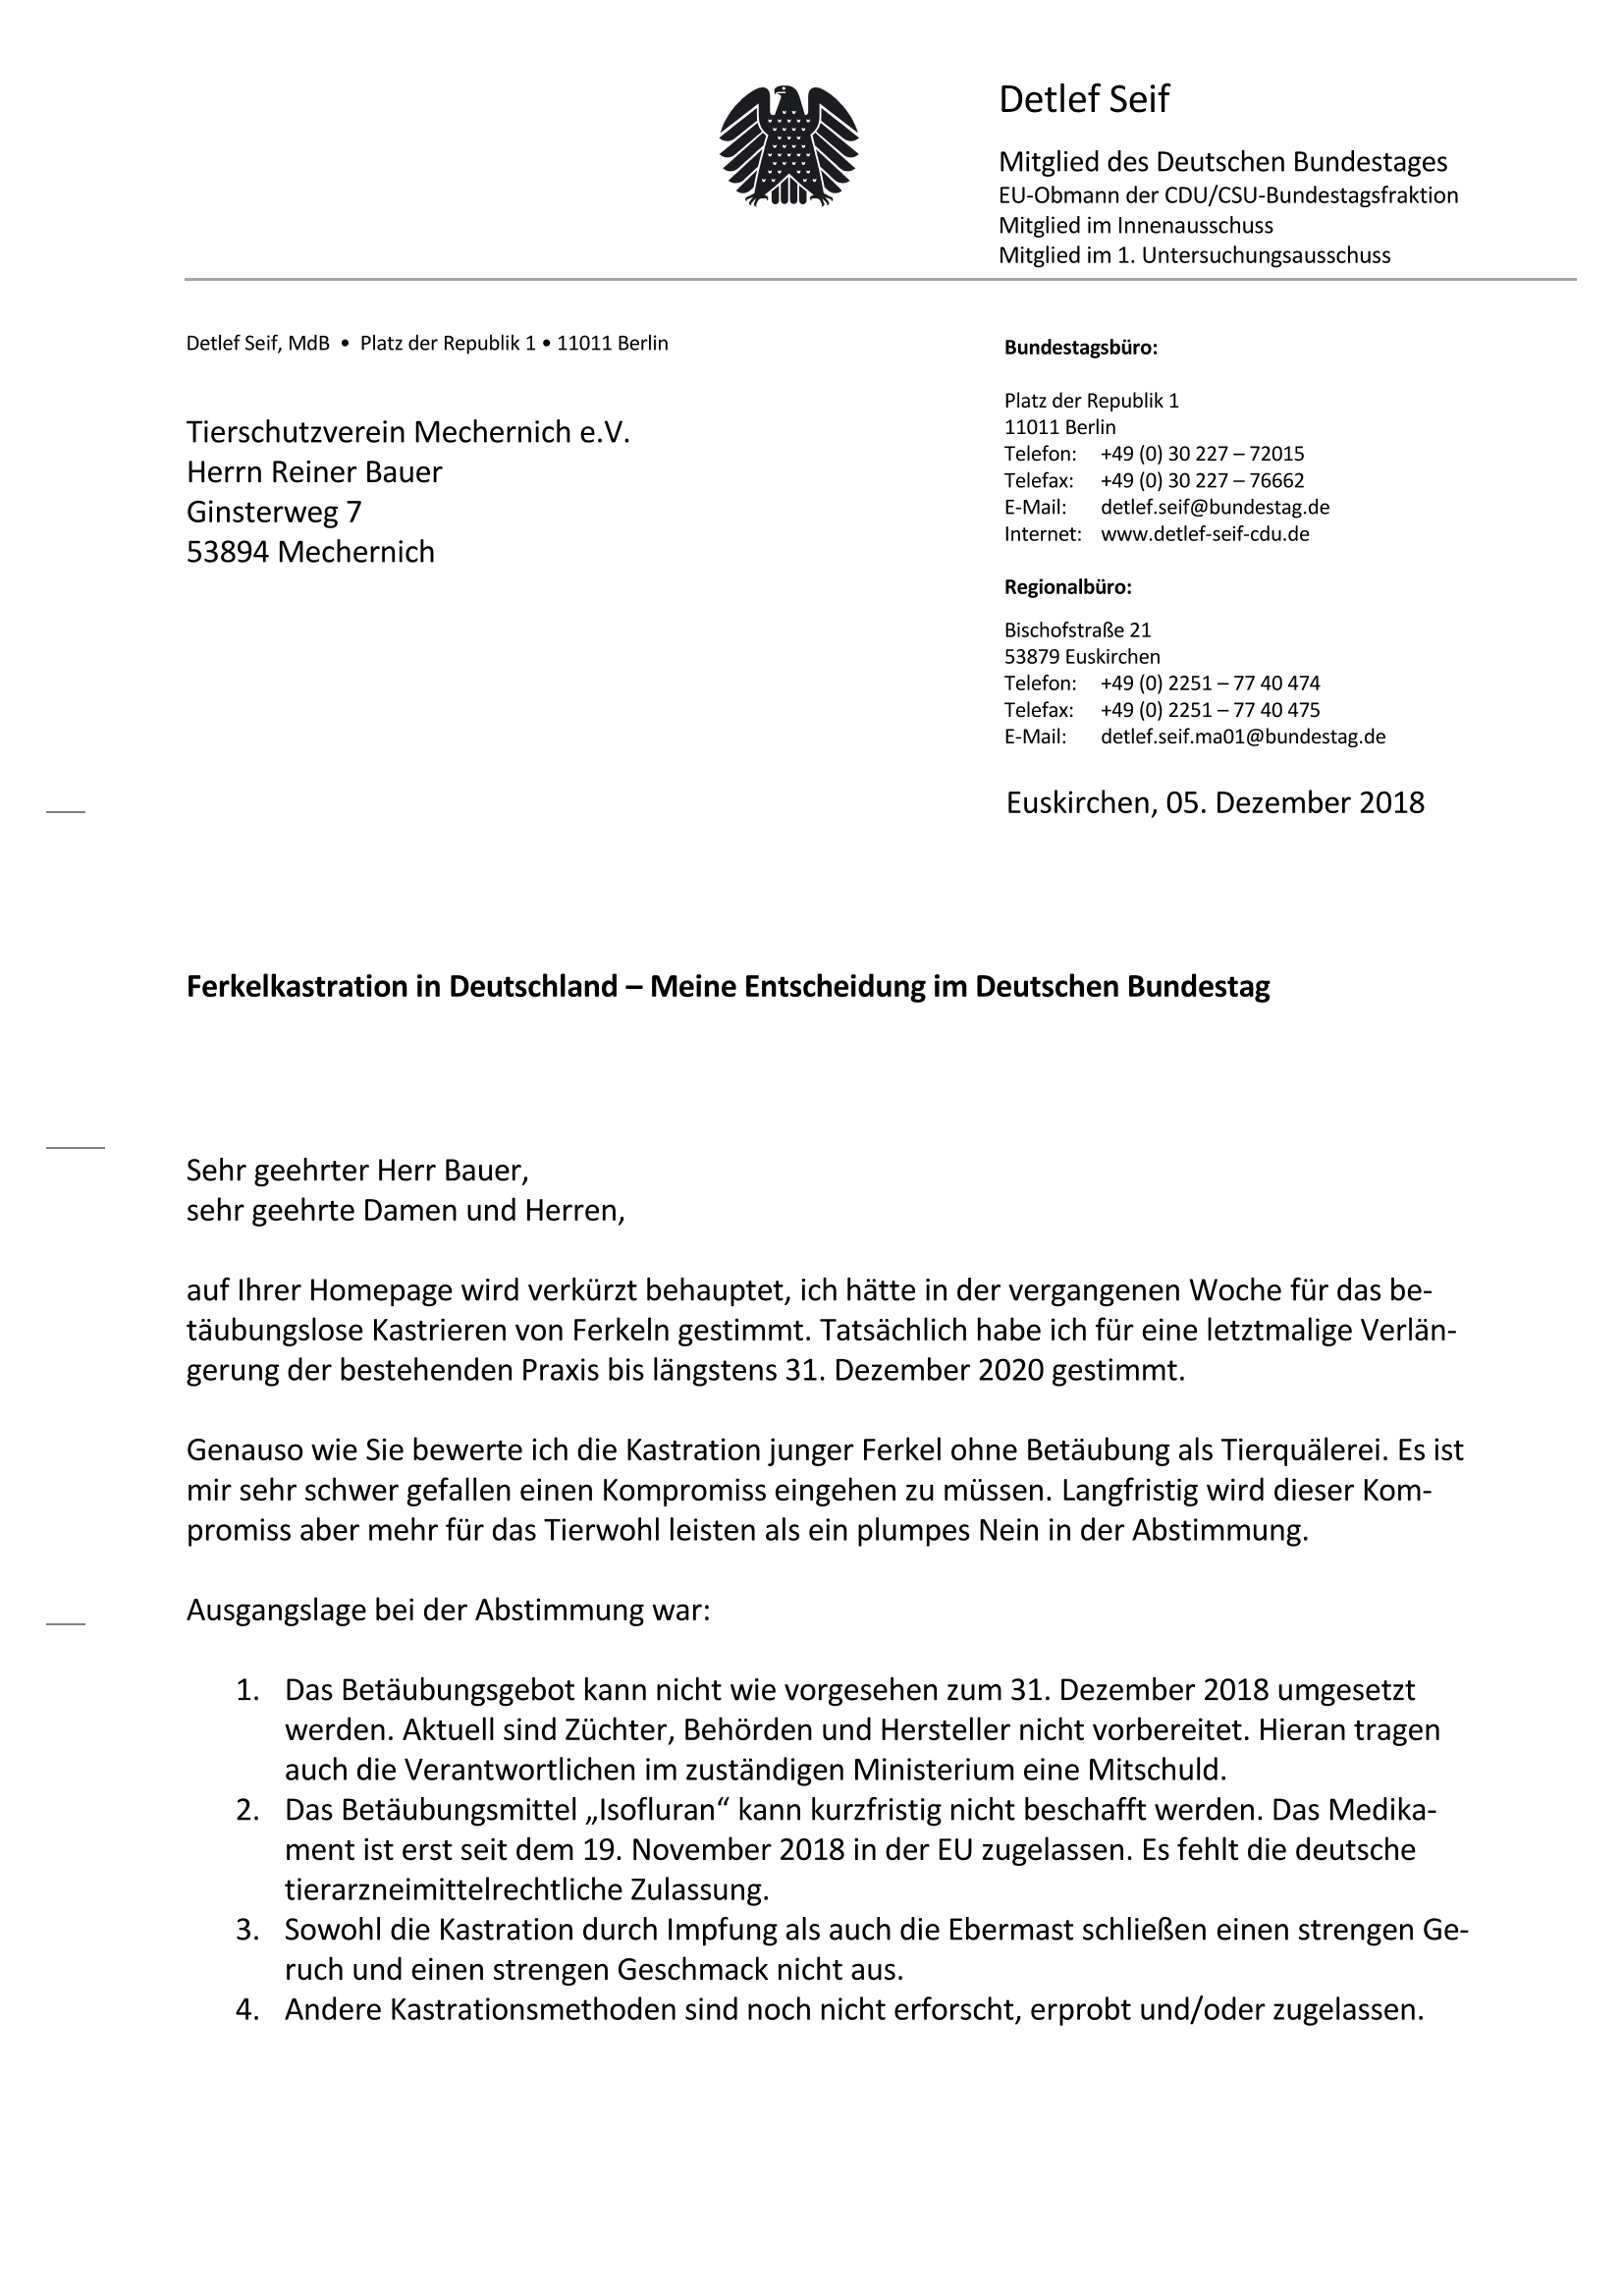 18 12 05 Antwort Ferkelkastration Tierschutzverein Mechernich KOMPLETT Page 1